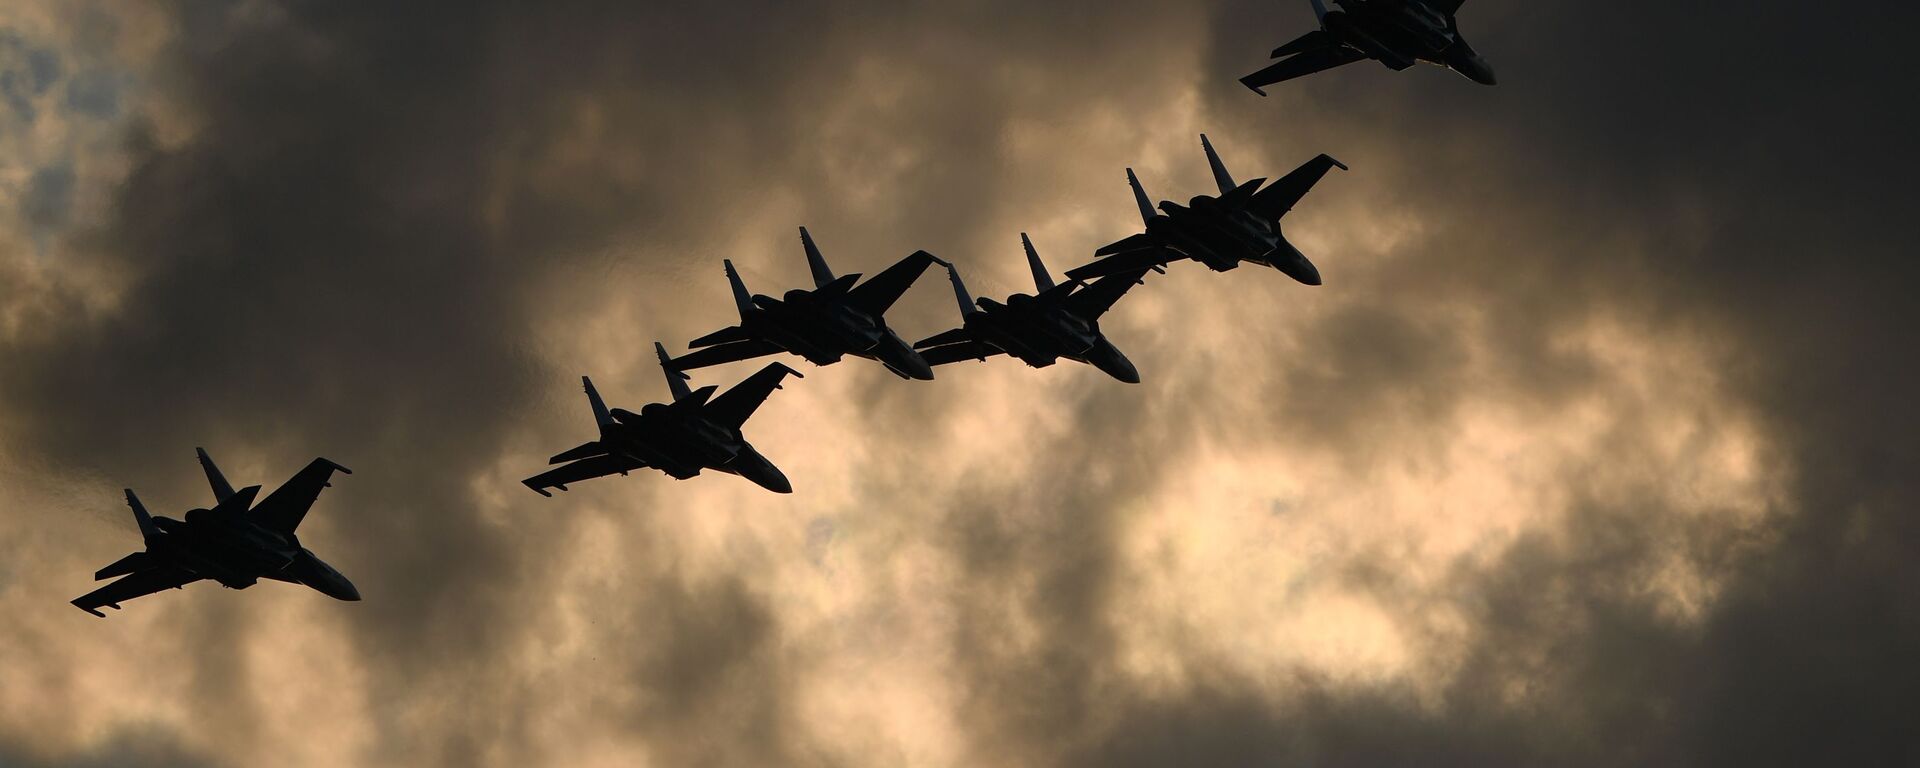 Пилотажная группа Русские витязи на самолетах Су-30СМ  во время выполнения летной программы на МАКС-2021 - Sputnik Ўзбекистон, 1920, 29.07.2021